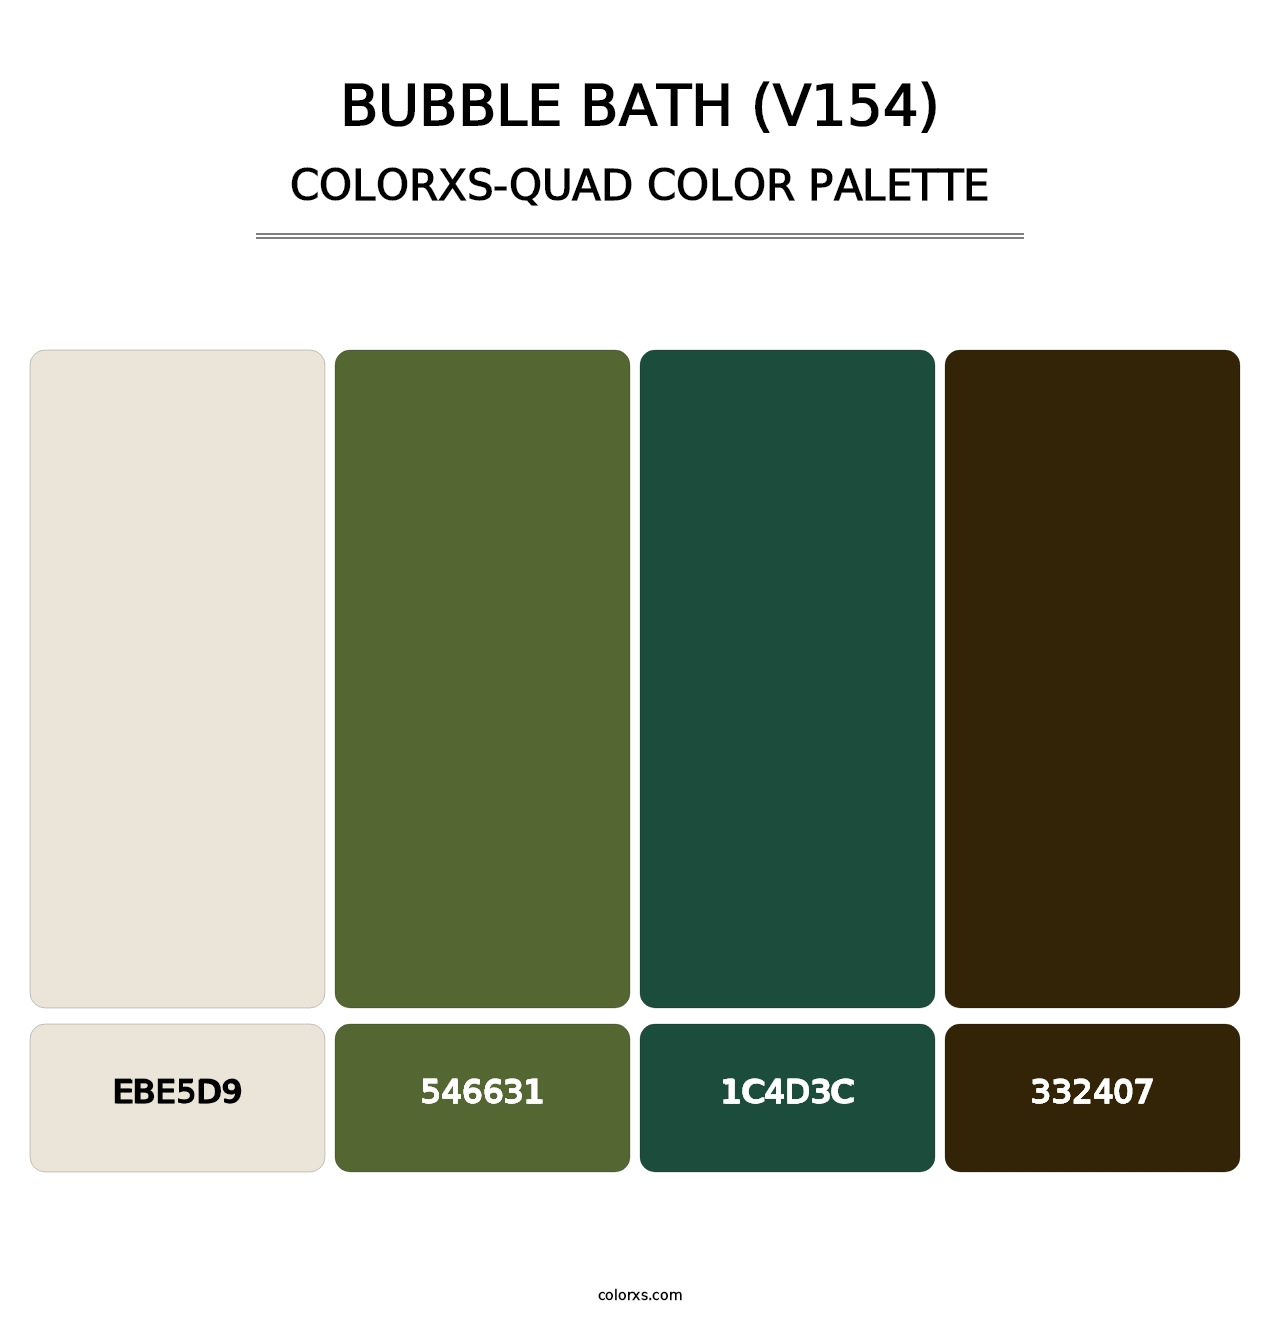 Bubble Bath (V154) - Colorxs Quad Palette